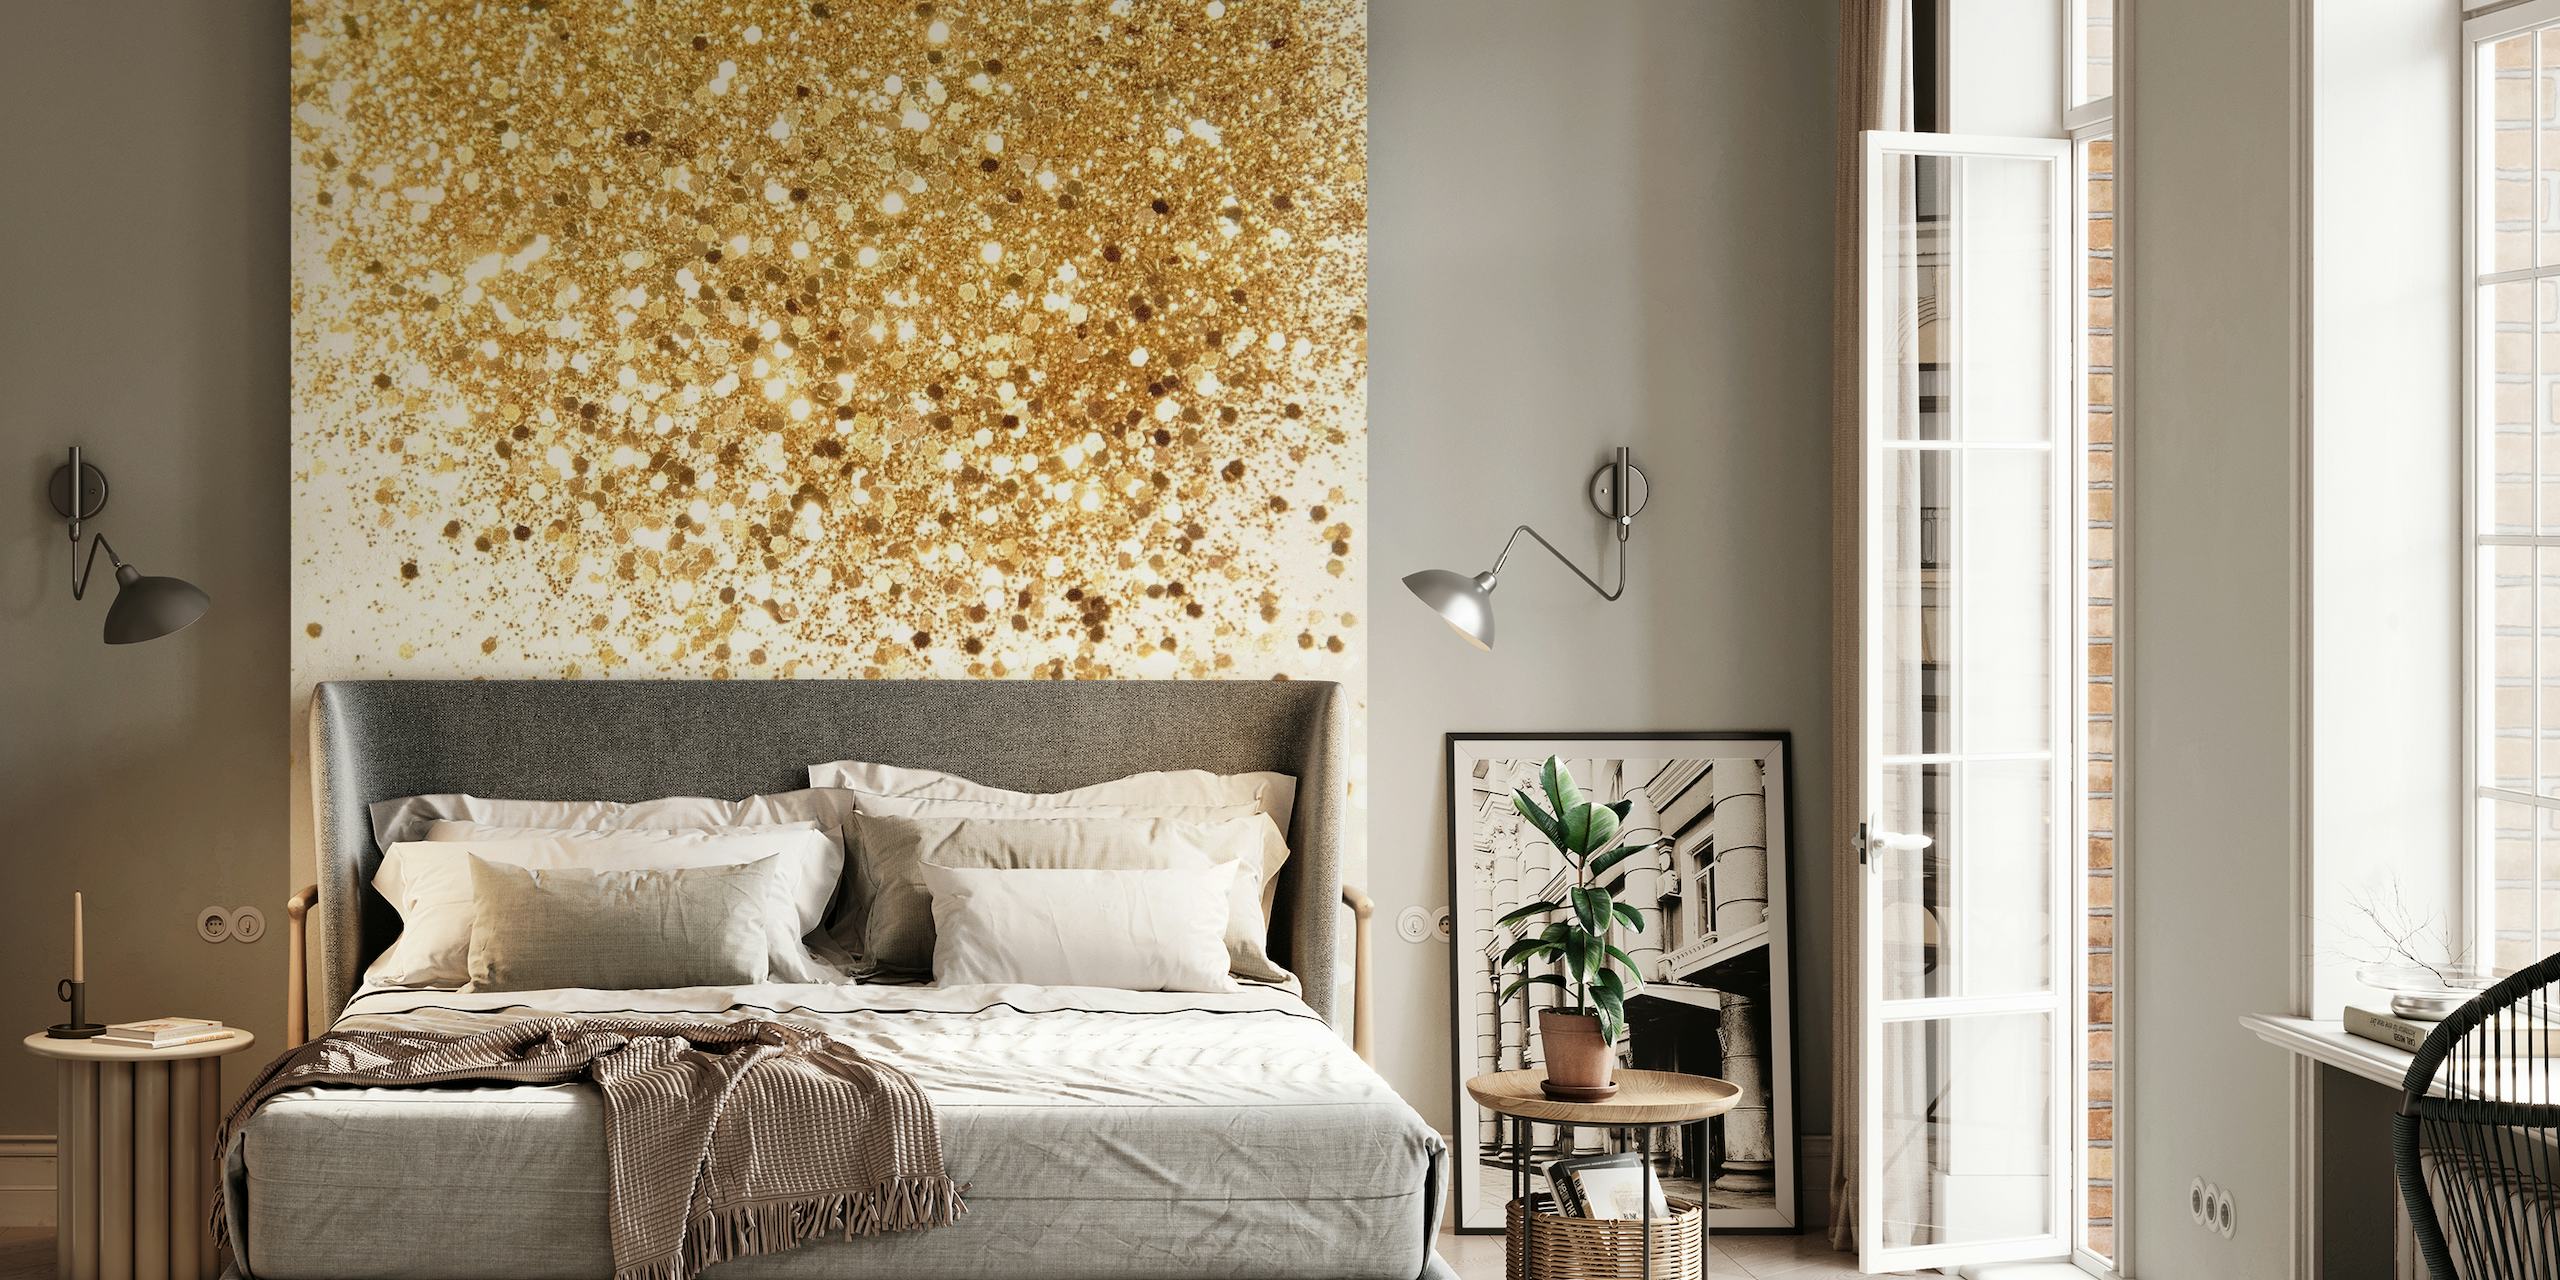 Fotomural vinílico de parede com glitter dourado brilhante criando uma aparência texturizada luxuosa